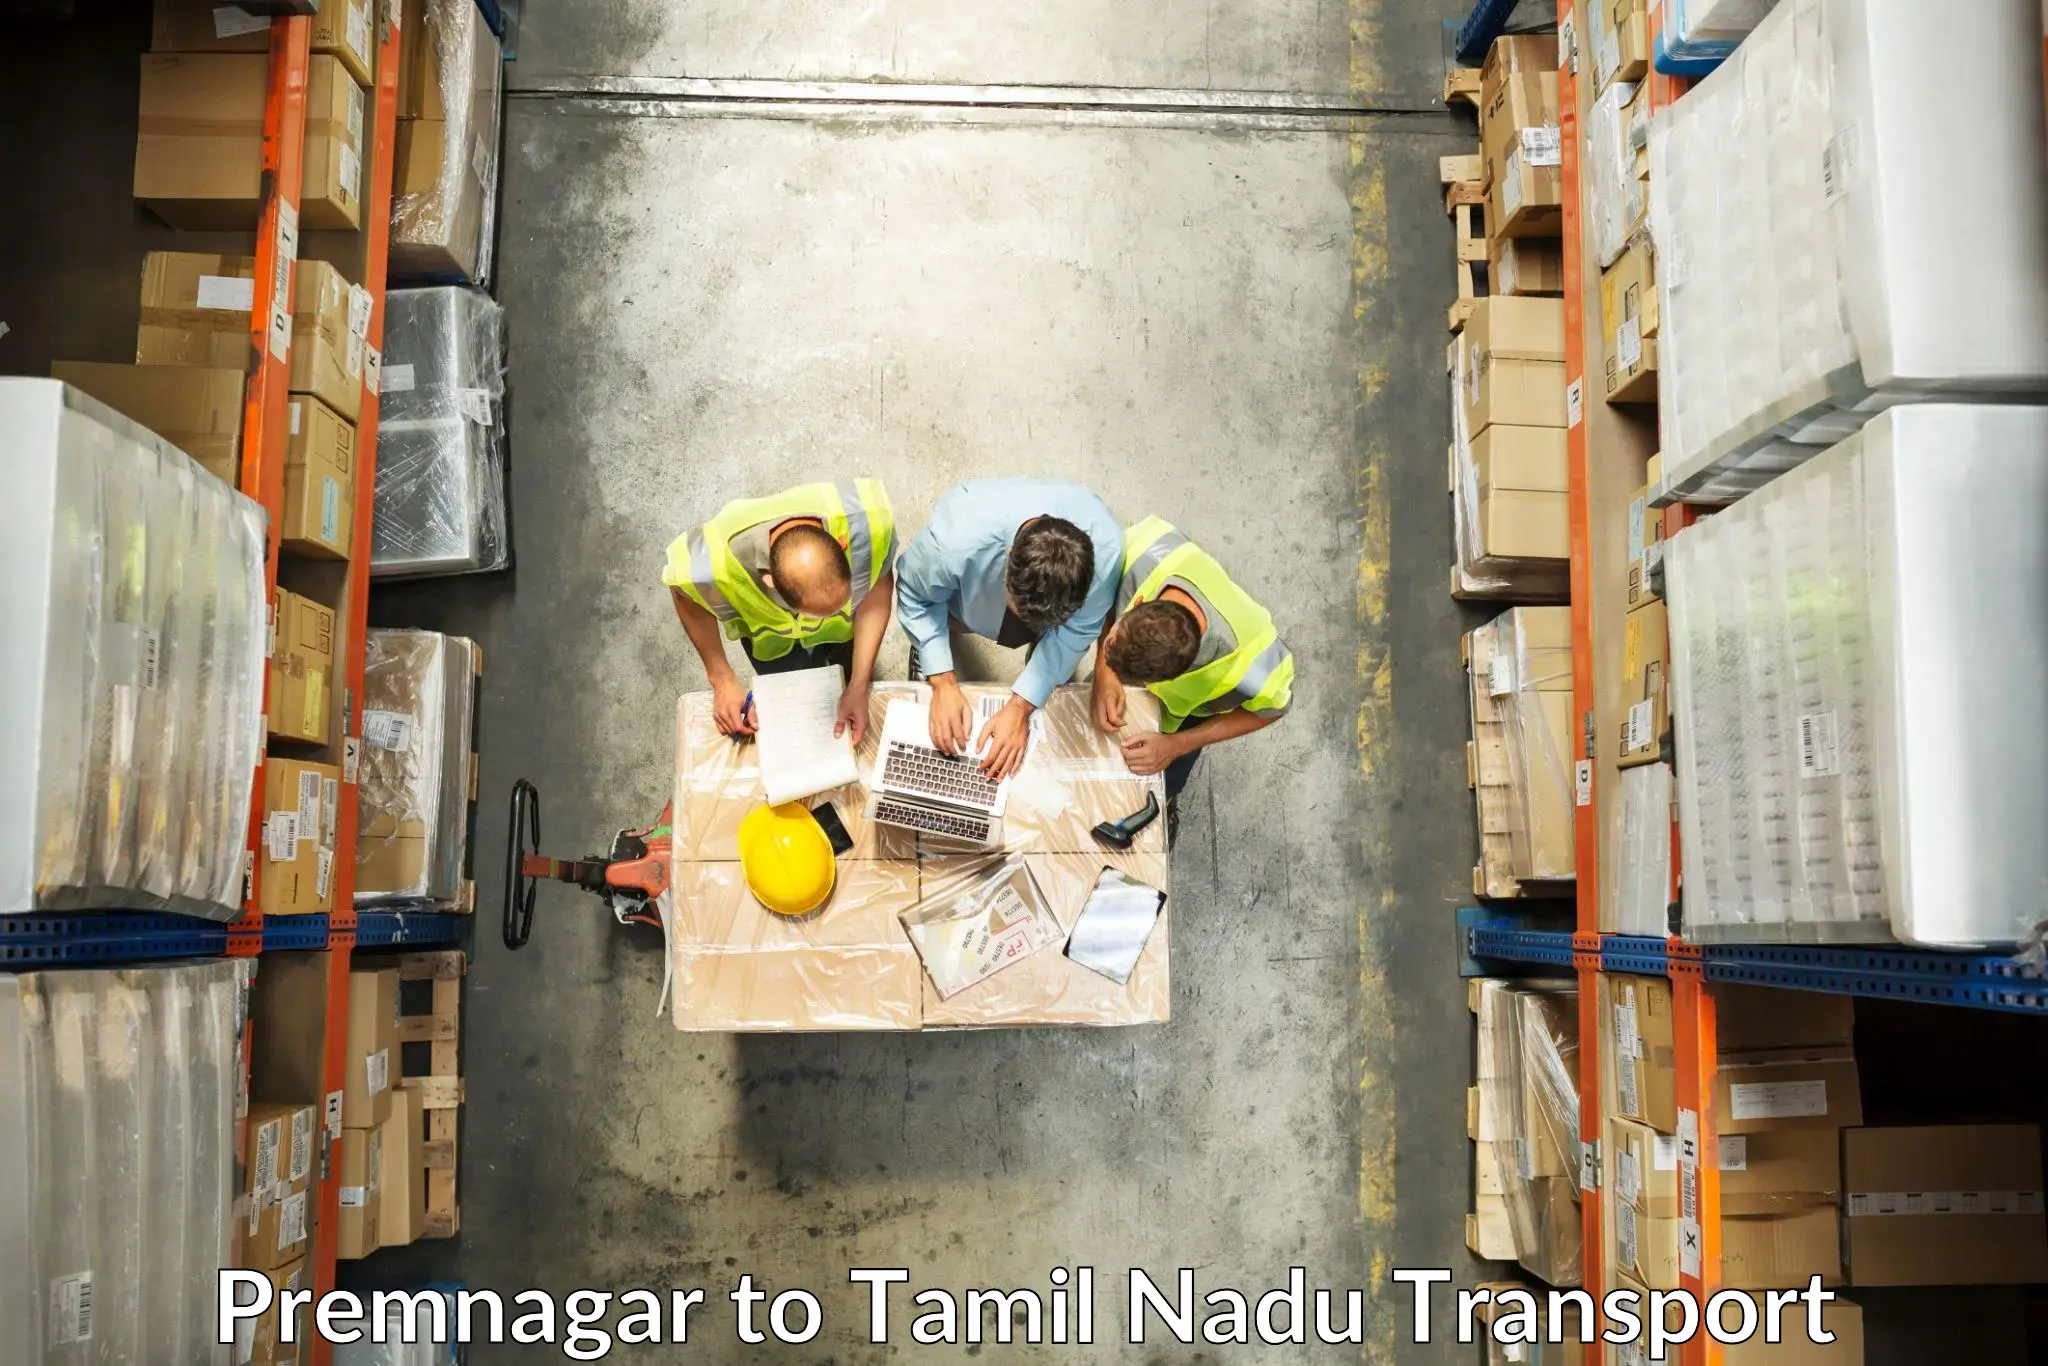 Pick up transport service Premnagar to Tamil Nadu